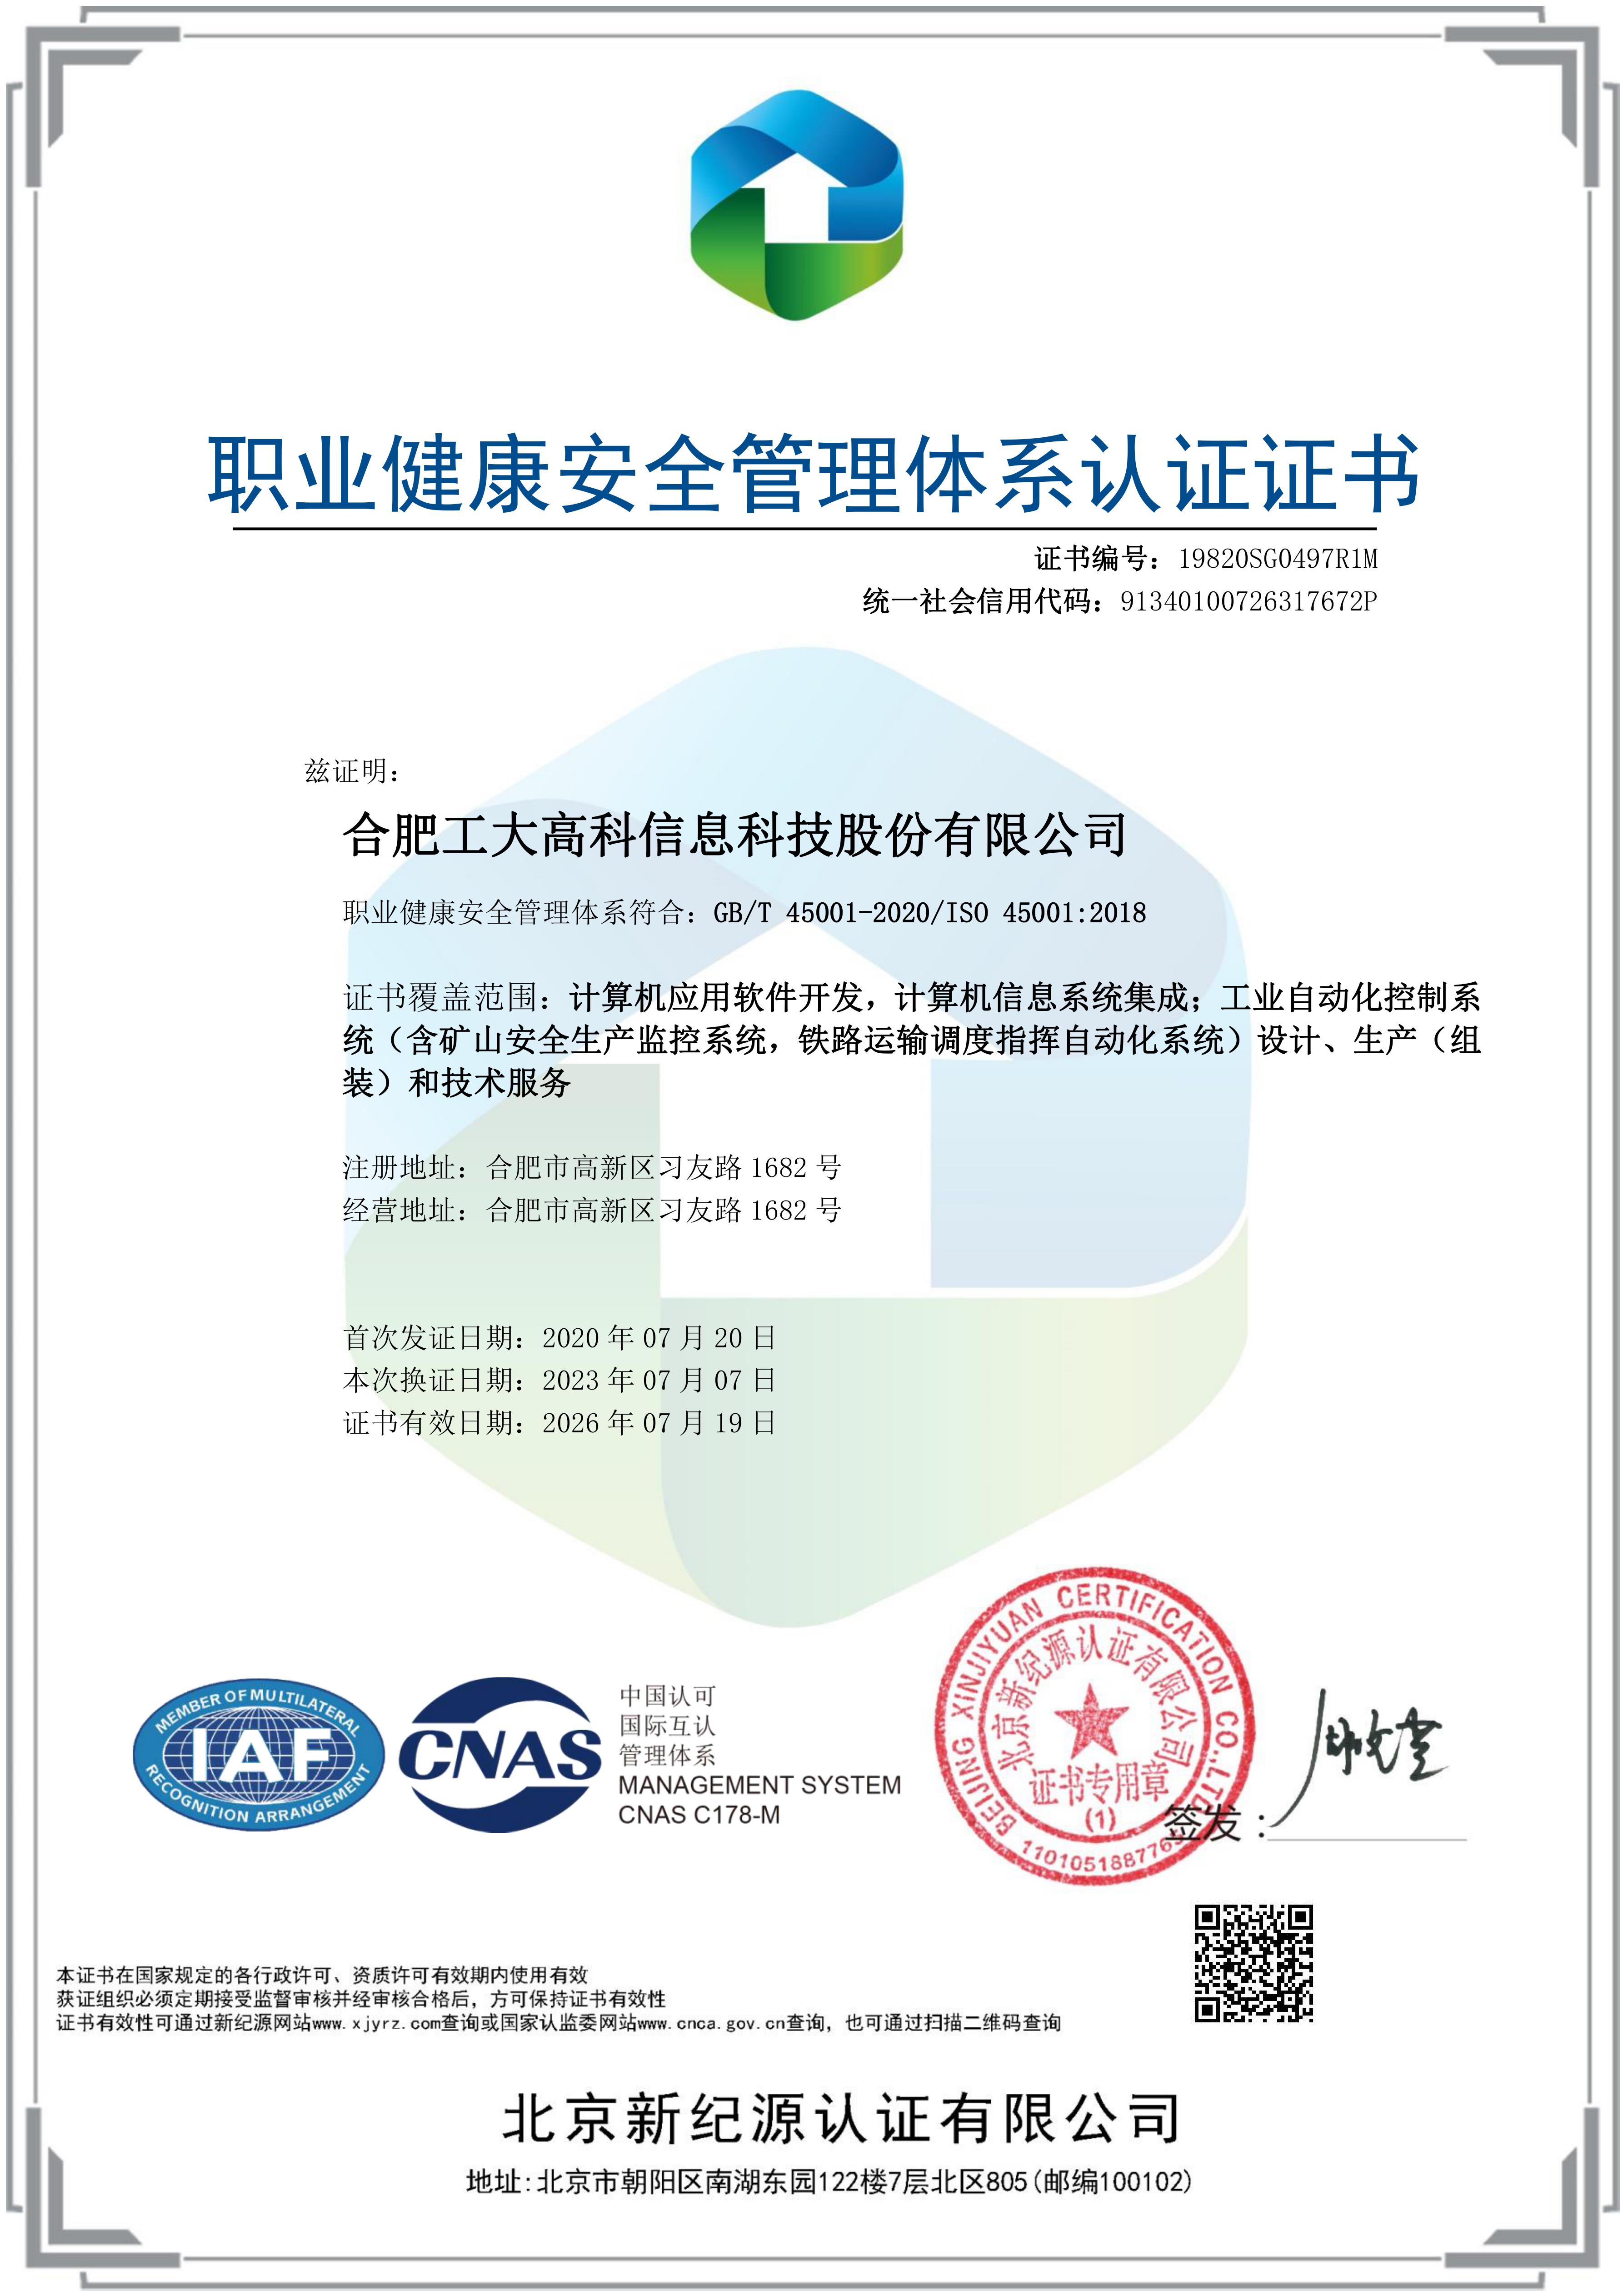 A37 職業健康體系證書-中文版